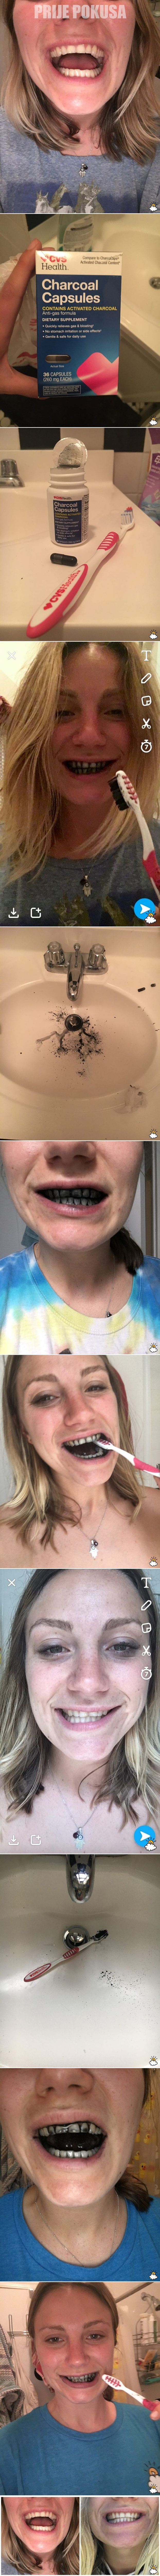 Tjedan dana je prala zube ugljenom, a onda je otkrila kako joj usta izgledaju nakon 7 dana